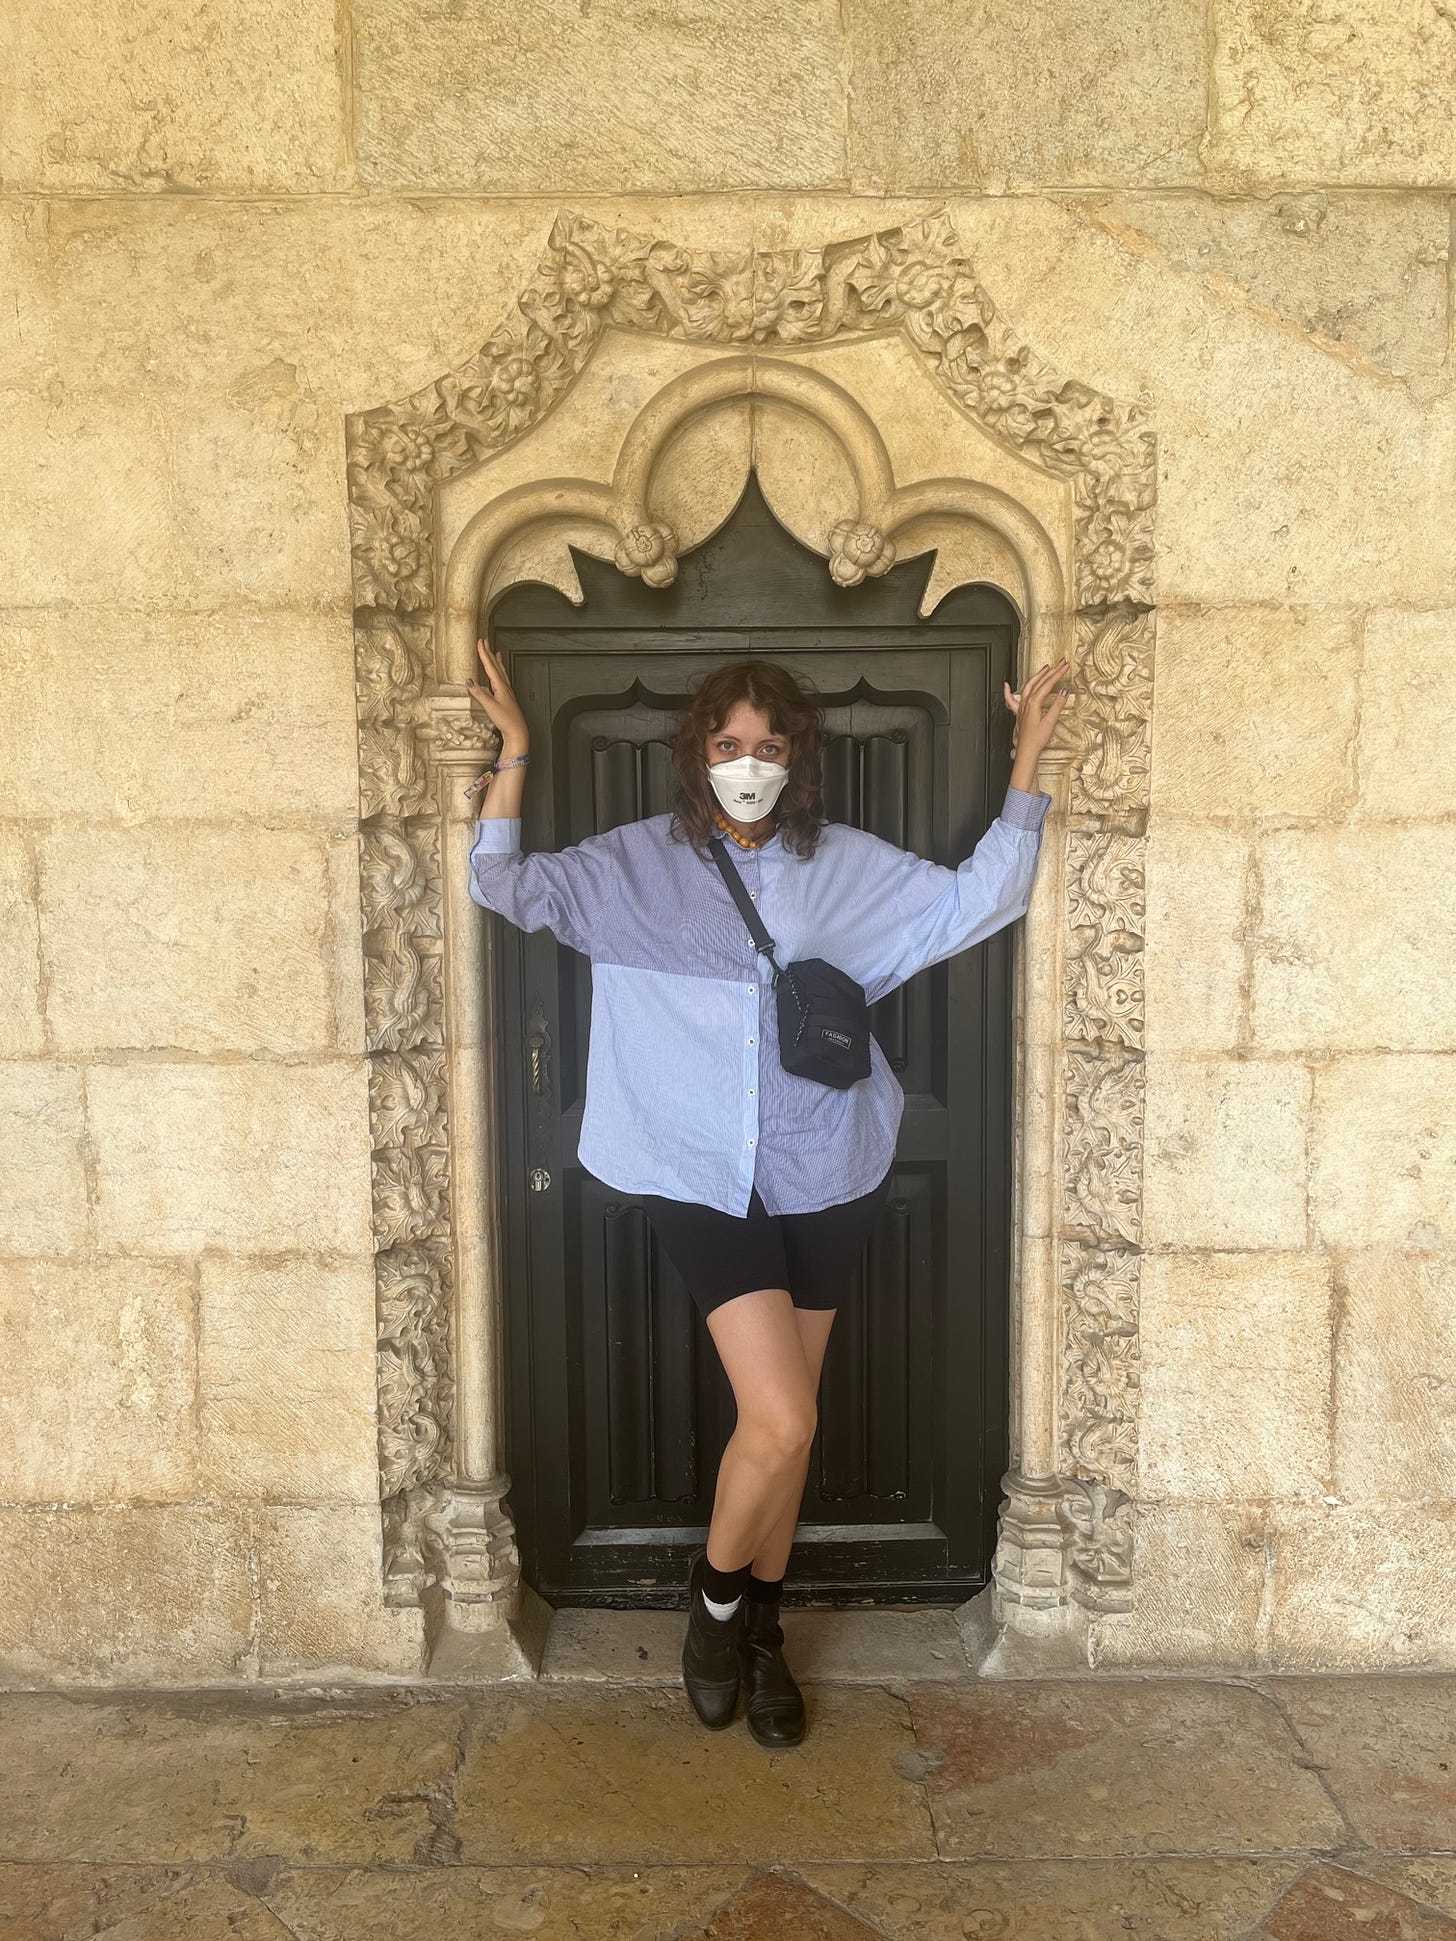 Eu fazendo pose numa portinha do Mosteiro dos Jerônimos, em Lisboa. Estou usando camisa azul claro, short preto, botas pretas e máscara aura